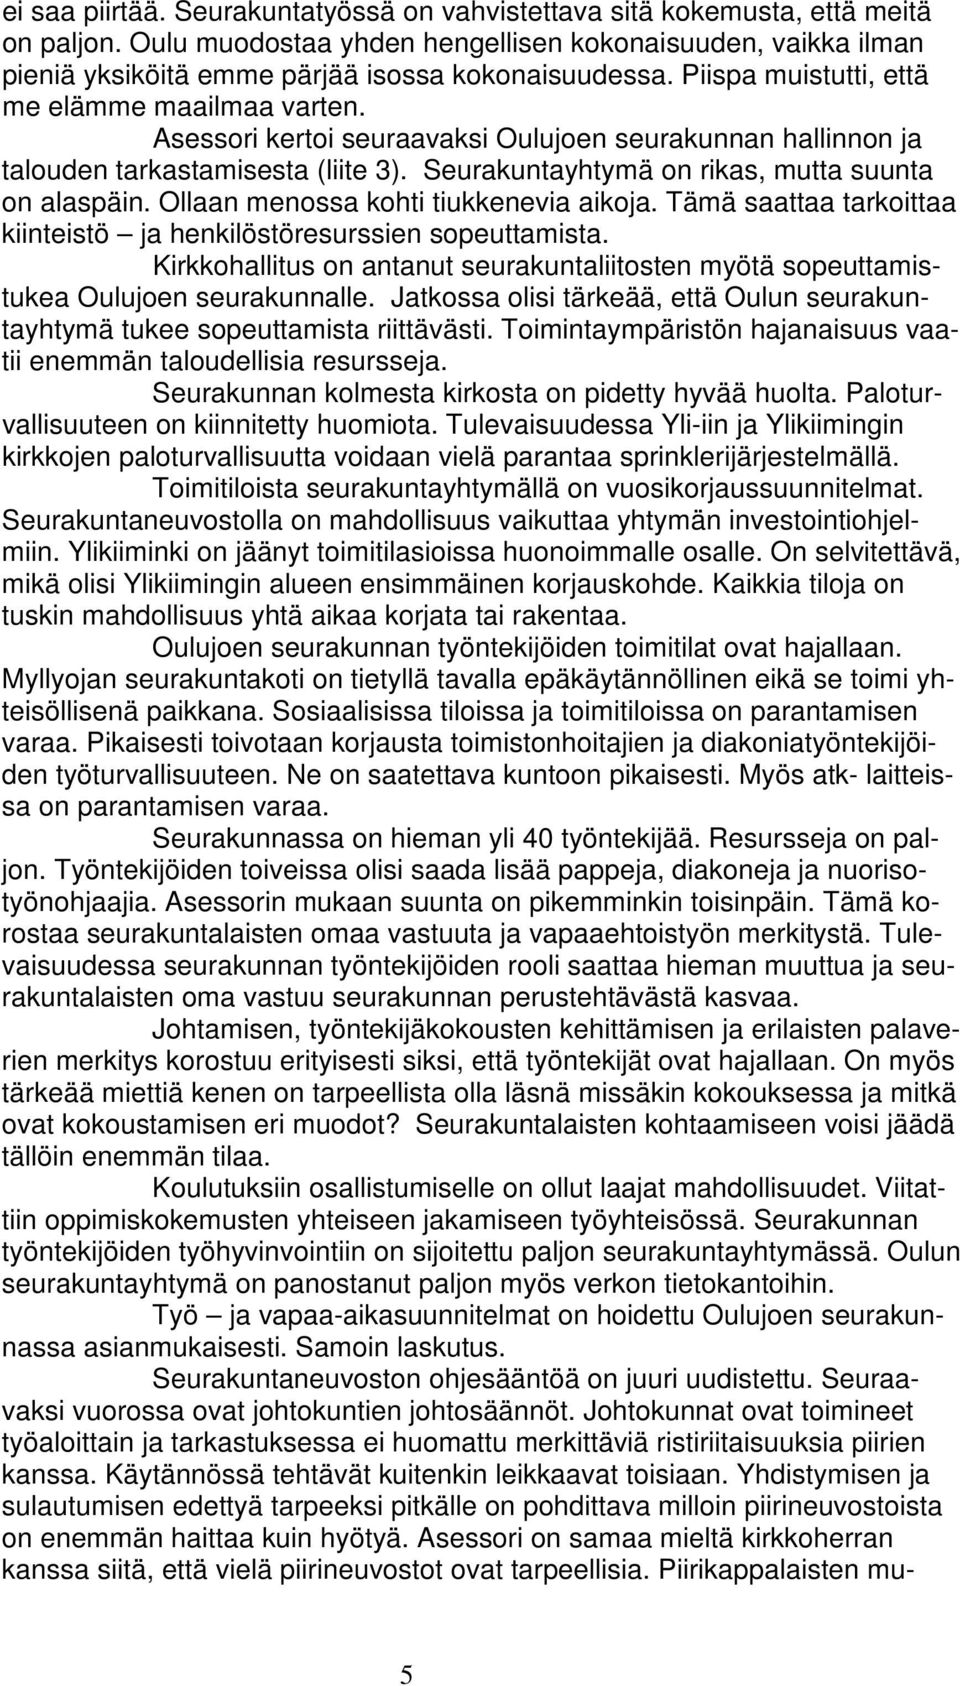 Asessori kertoi seuraavaksi Oulujoen seurakunnan hallinnon ja talouden tarkastamisesta (liite 3). Seurakuntayhtymä on rikas, mutta suunta on alaspäin. Ollaan menossa kohti tiukkenevia aikoja.